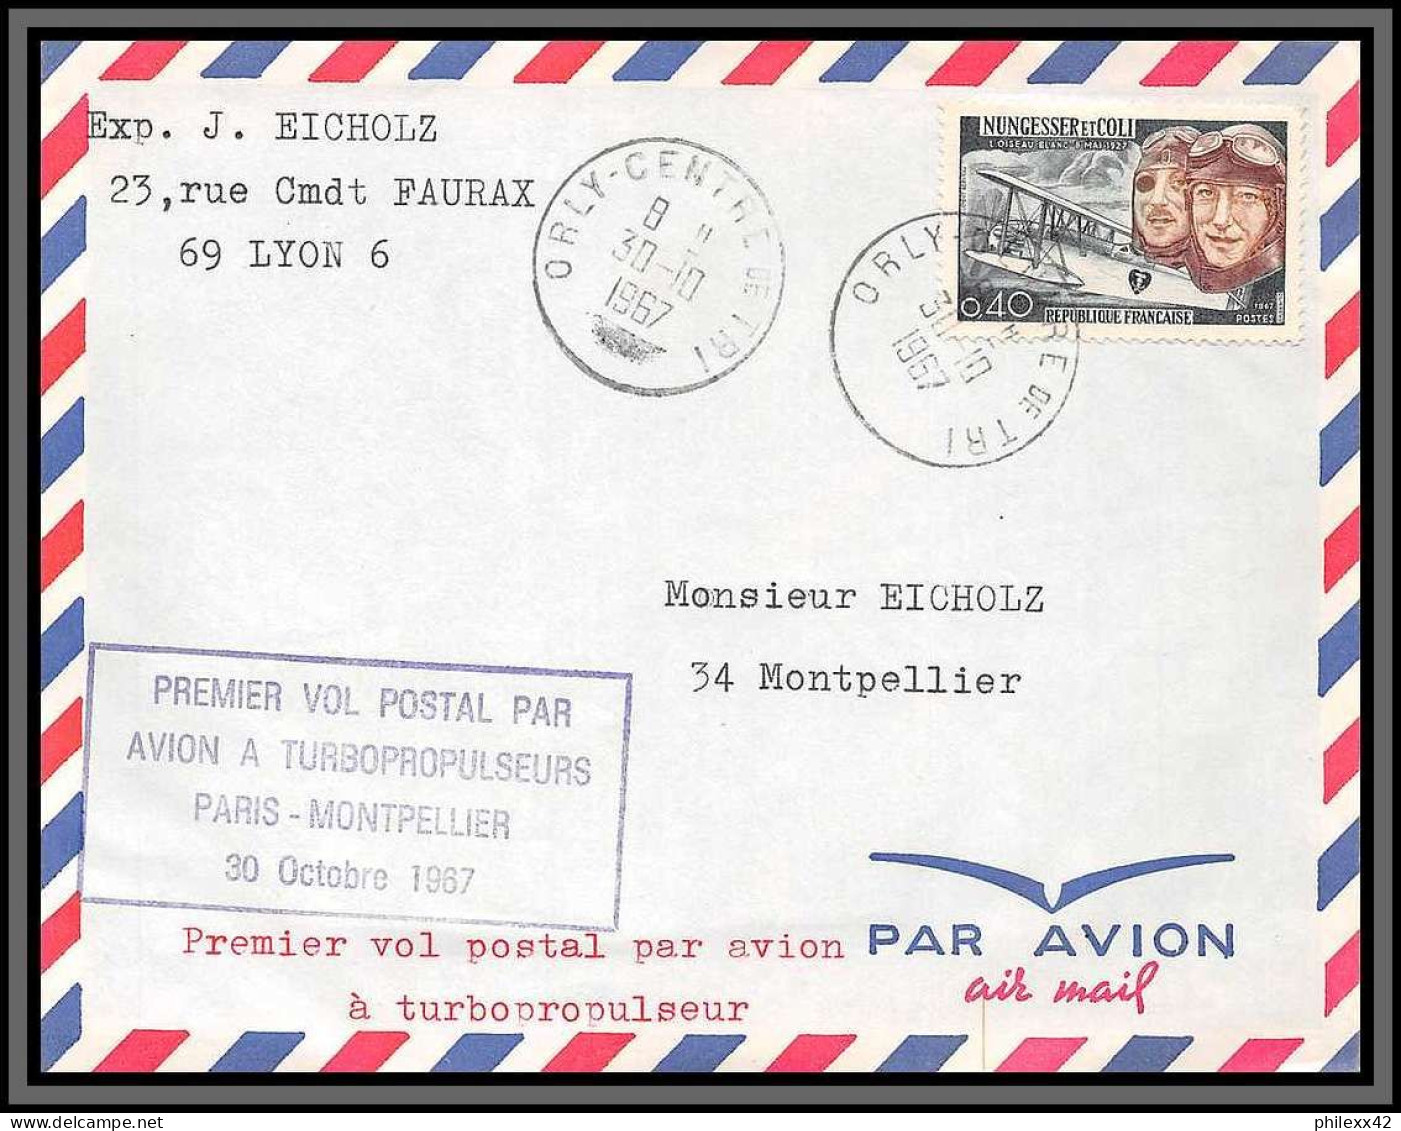 10251 1er Vol Postal Par Avion A Tubopropulseurs Paris Montpellier Orly 30/10/1967 Lettre Cover France Aviation  - Erst- U. Sonderflugbriefe